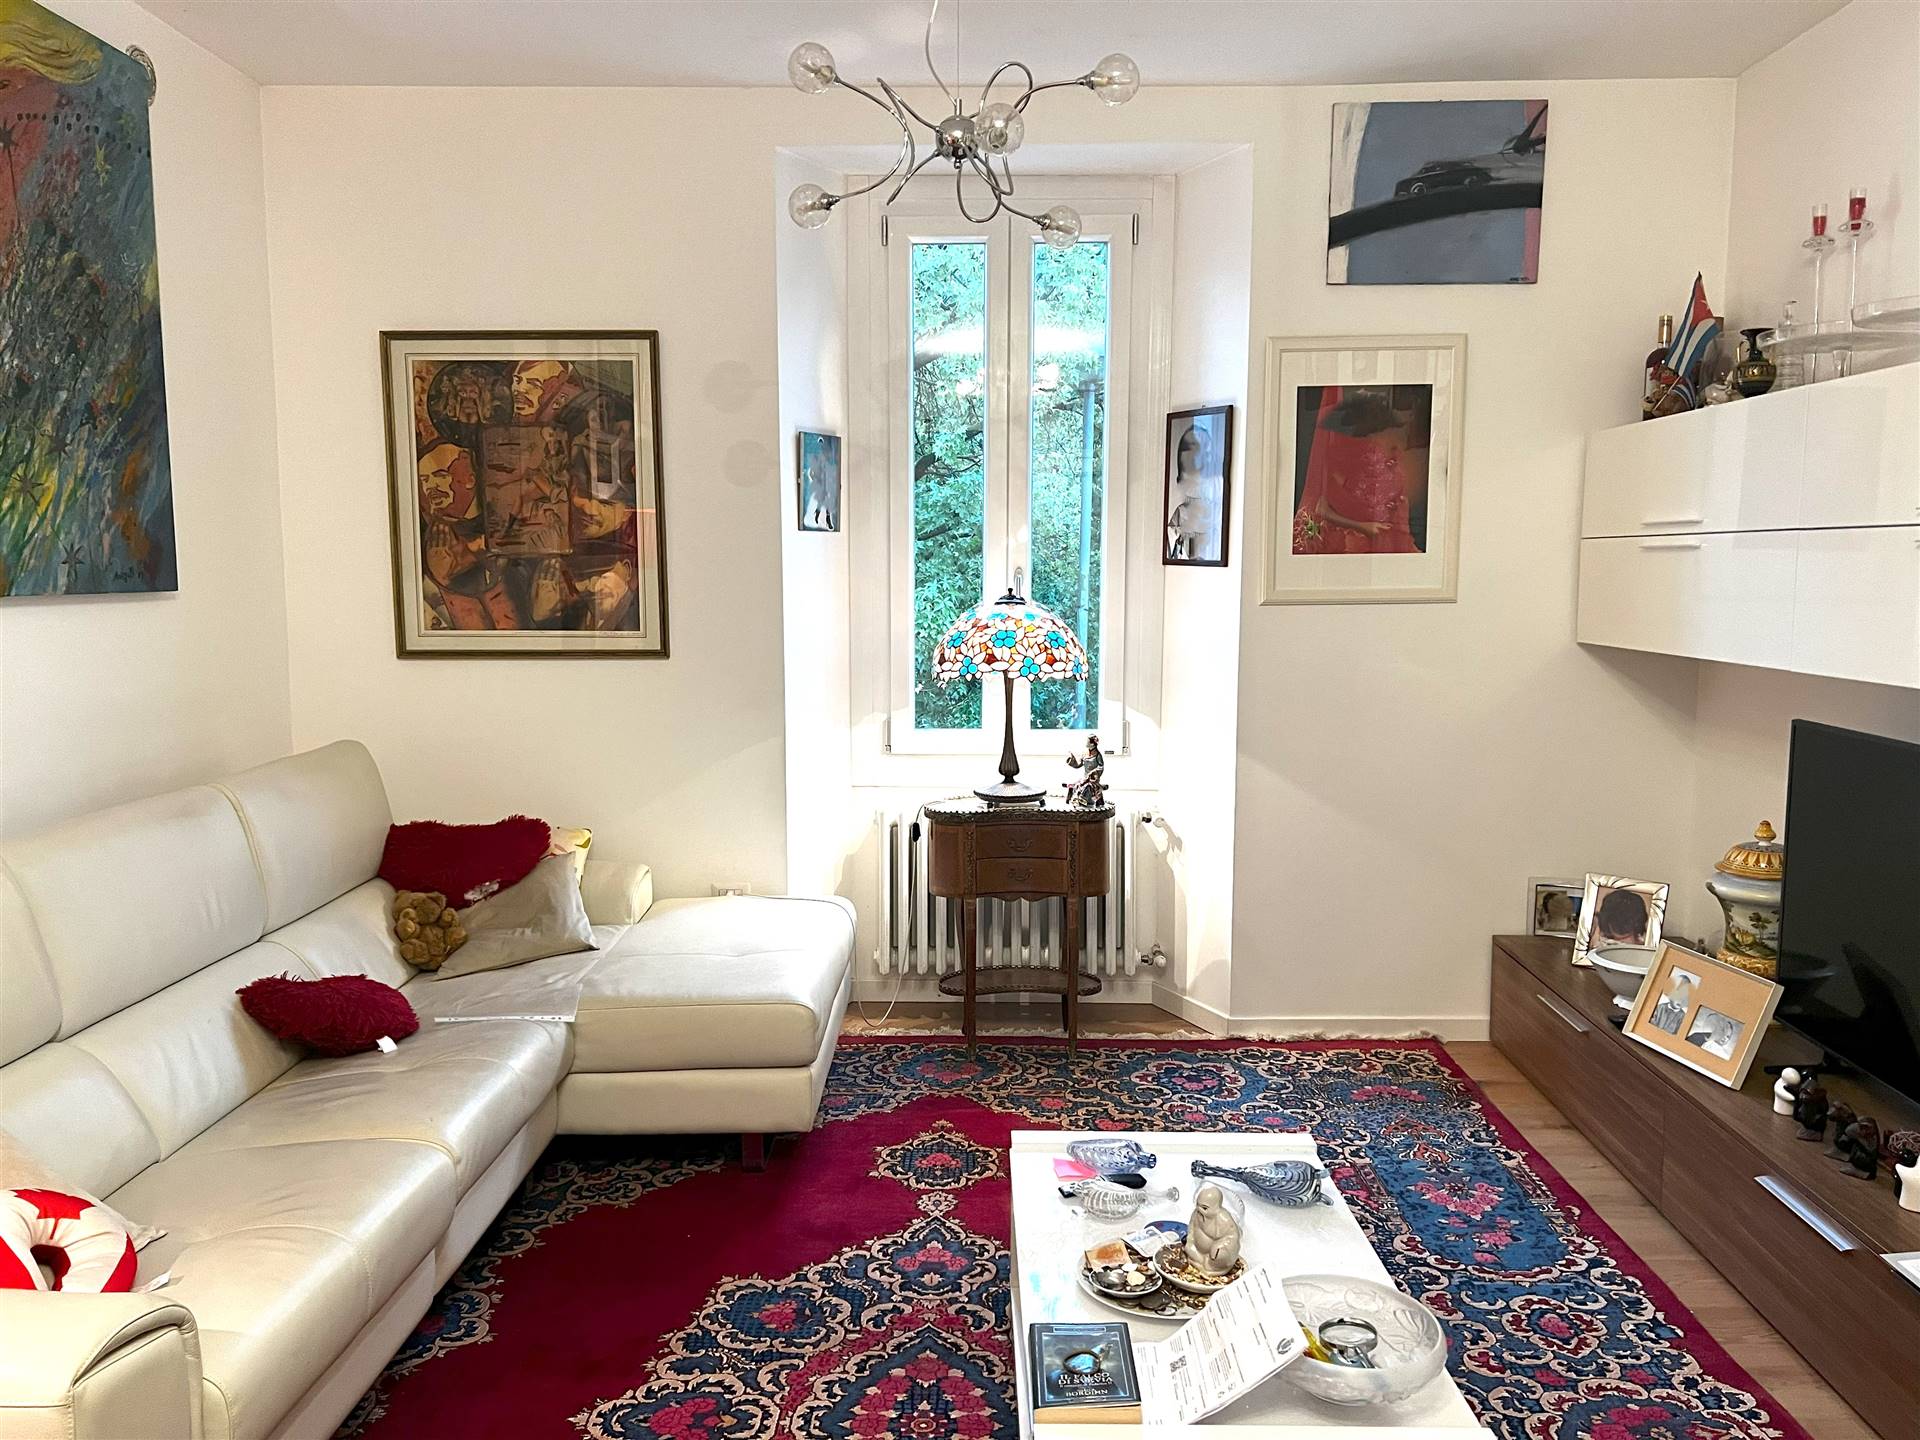 Appartamento in vendita a Sondrio, 8 locali, zona ro zona Garibaldi, prezzo € 137.000 | PortaleAgenzieImmobiliari.it